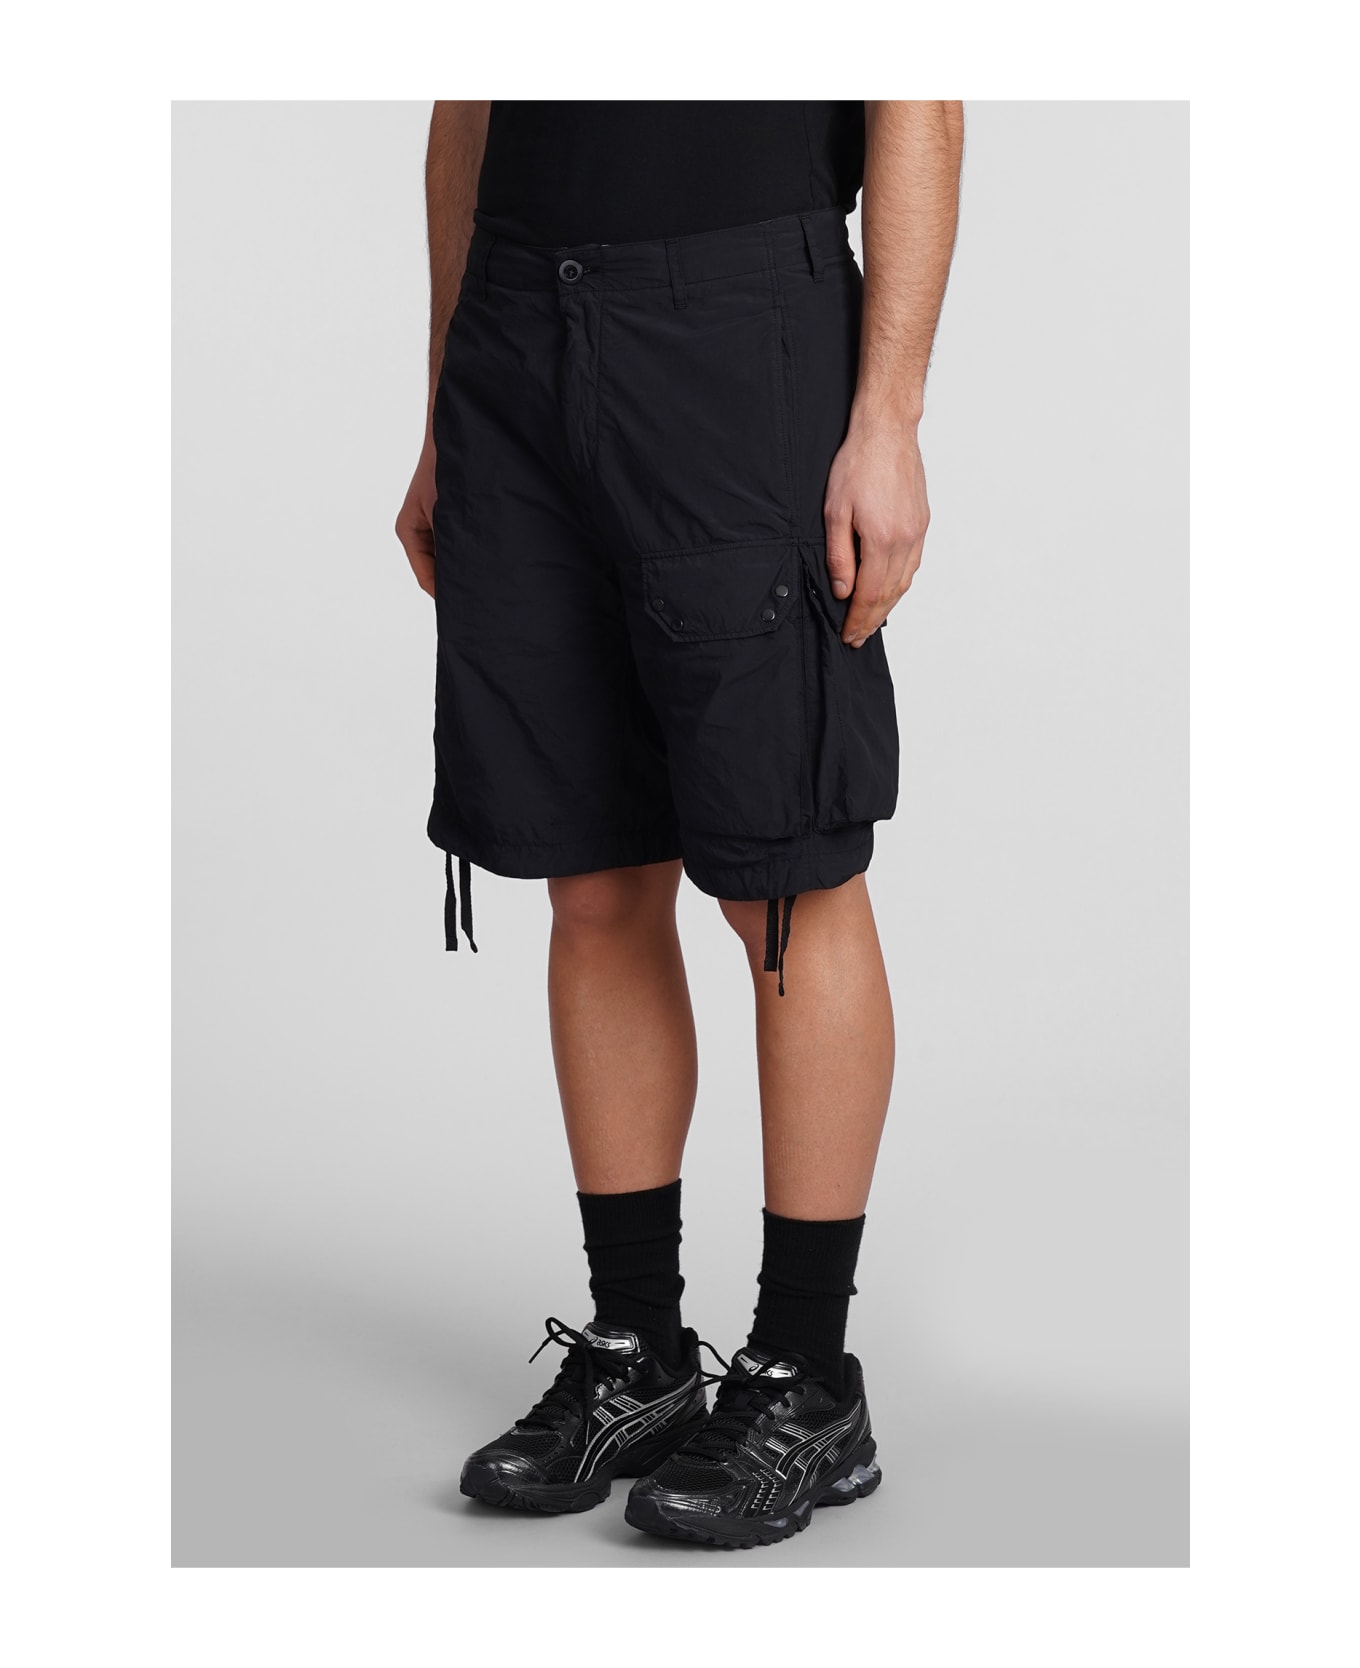 Ten C Shorts In Black Polyester - black ショートパンツ